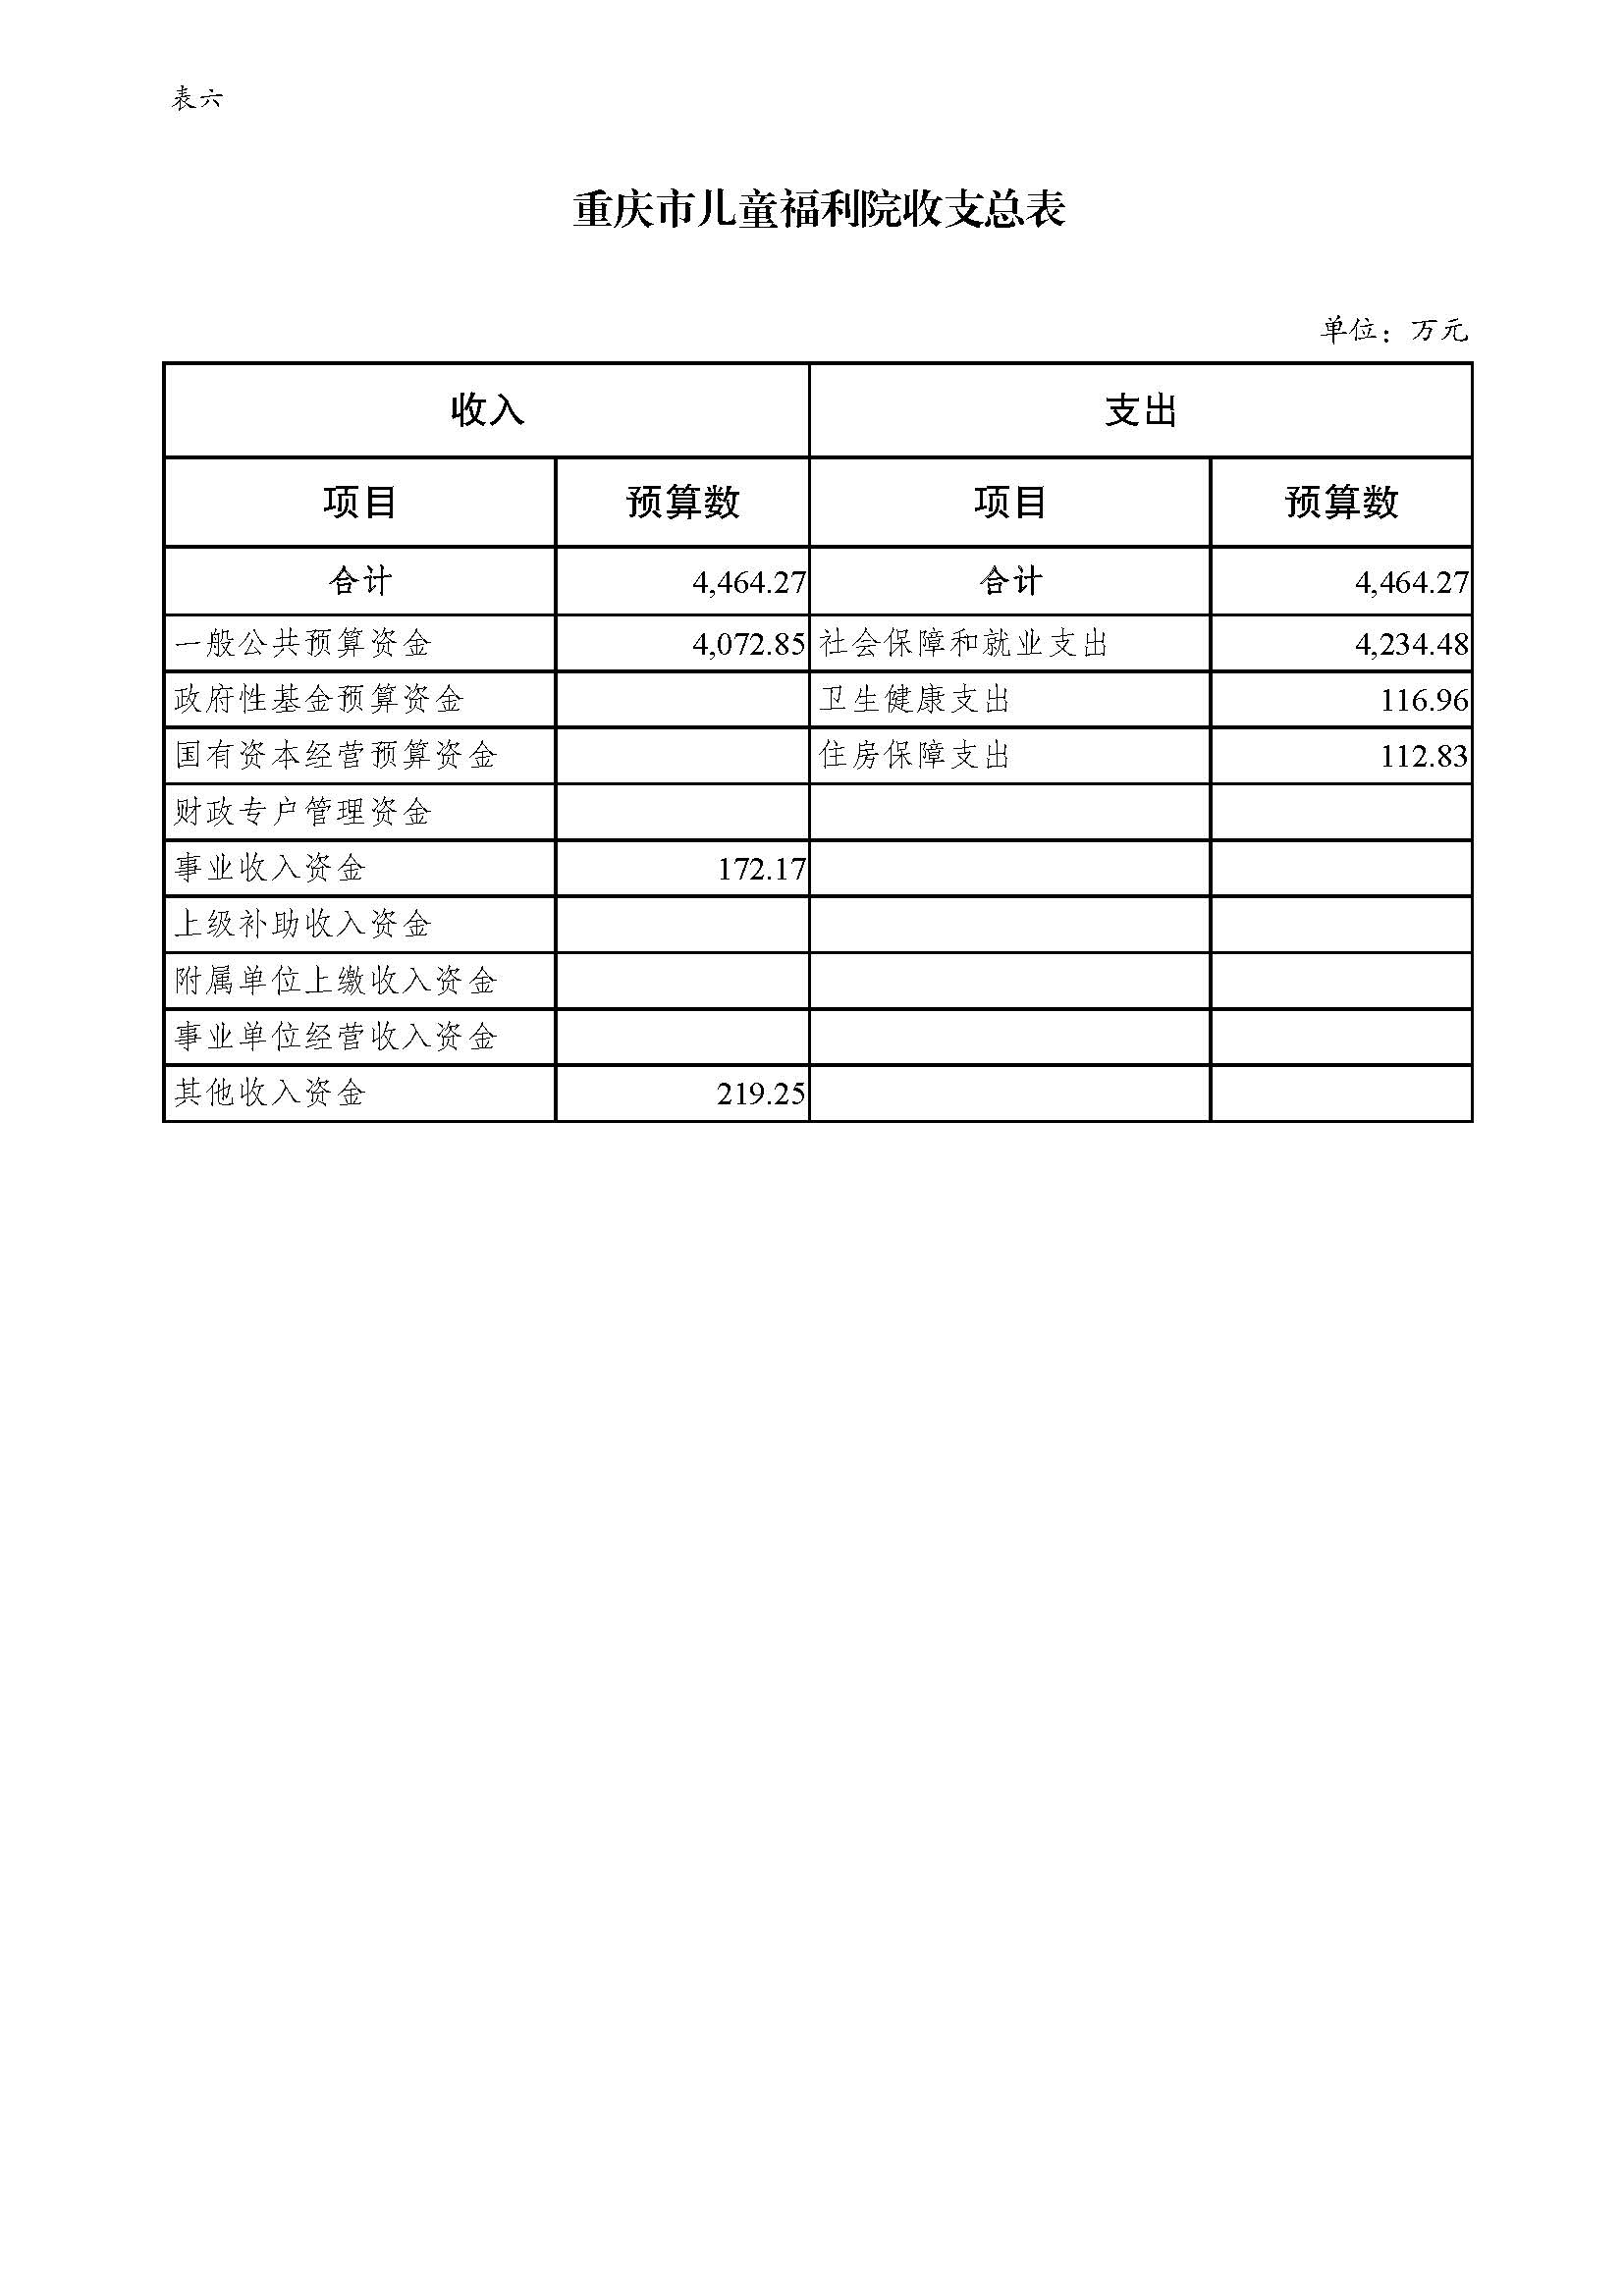 重庆市儿童福利院2022年预算公开_页面_12.jpg